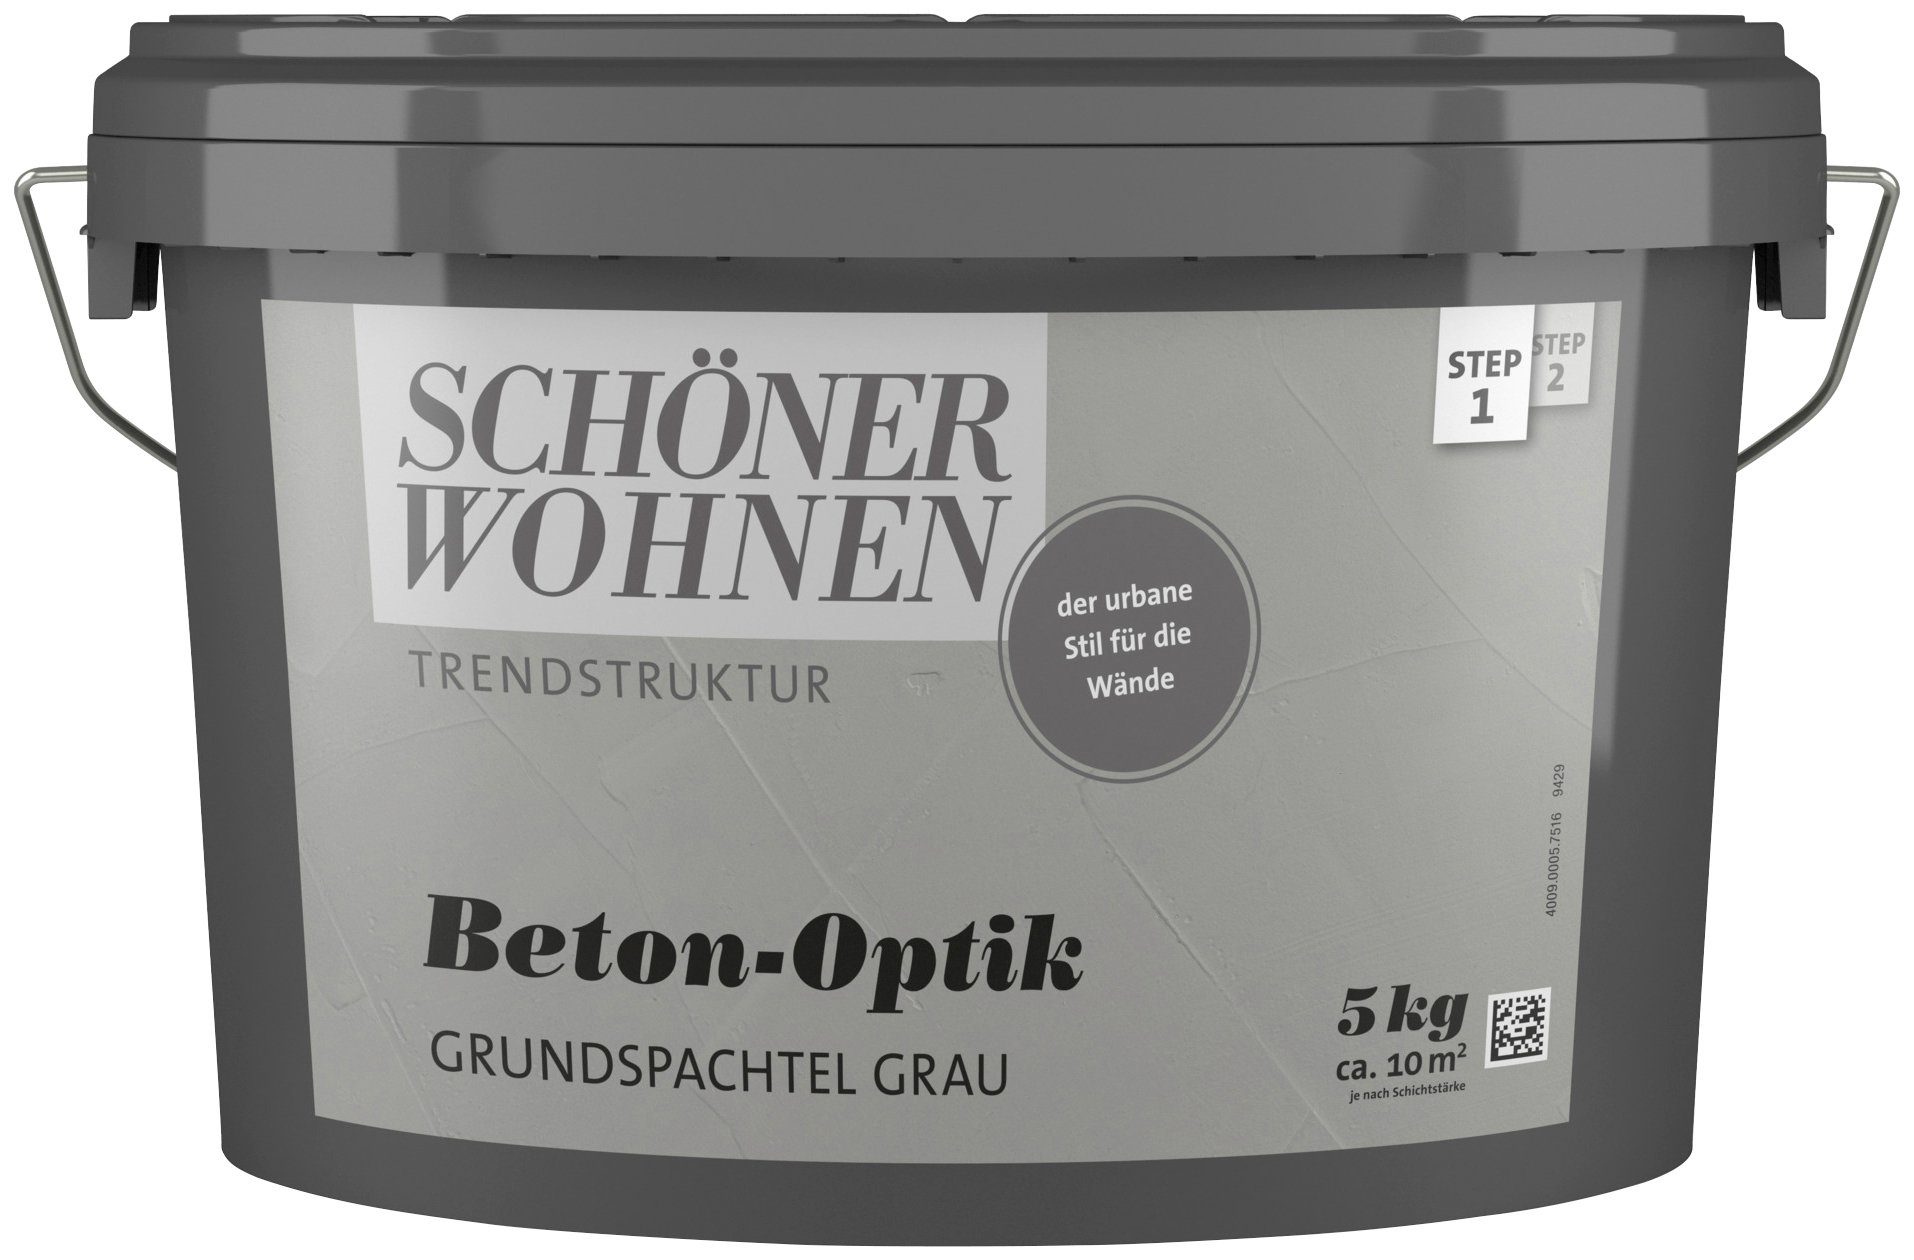 SCHÖNER WOHNEN-Kollektion Spachtelmasse Betonoptik Grundspachtel, 5 kg,  grau, Grundspachtelung für die Beton-Optik